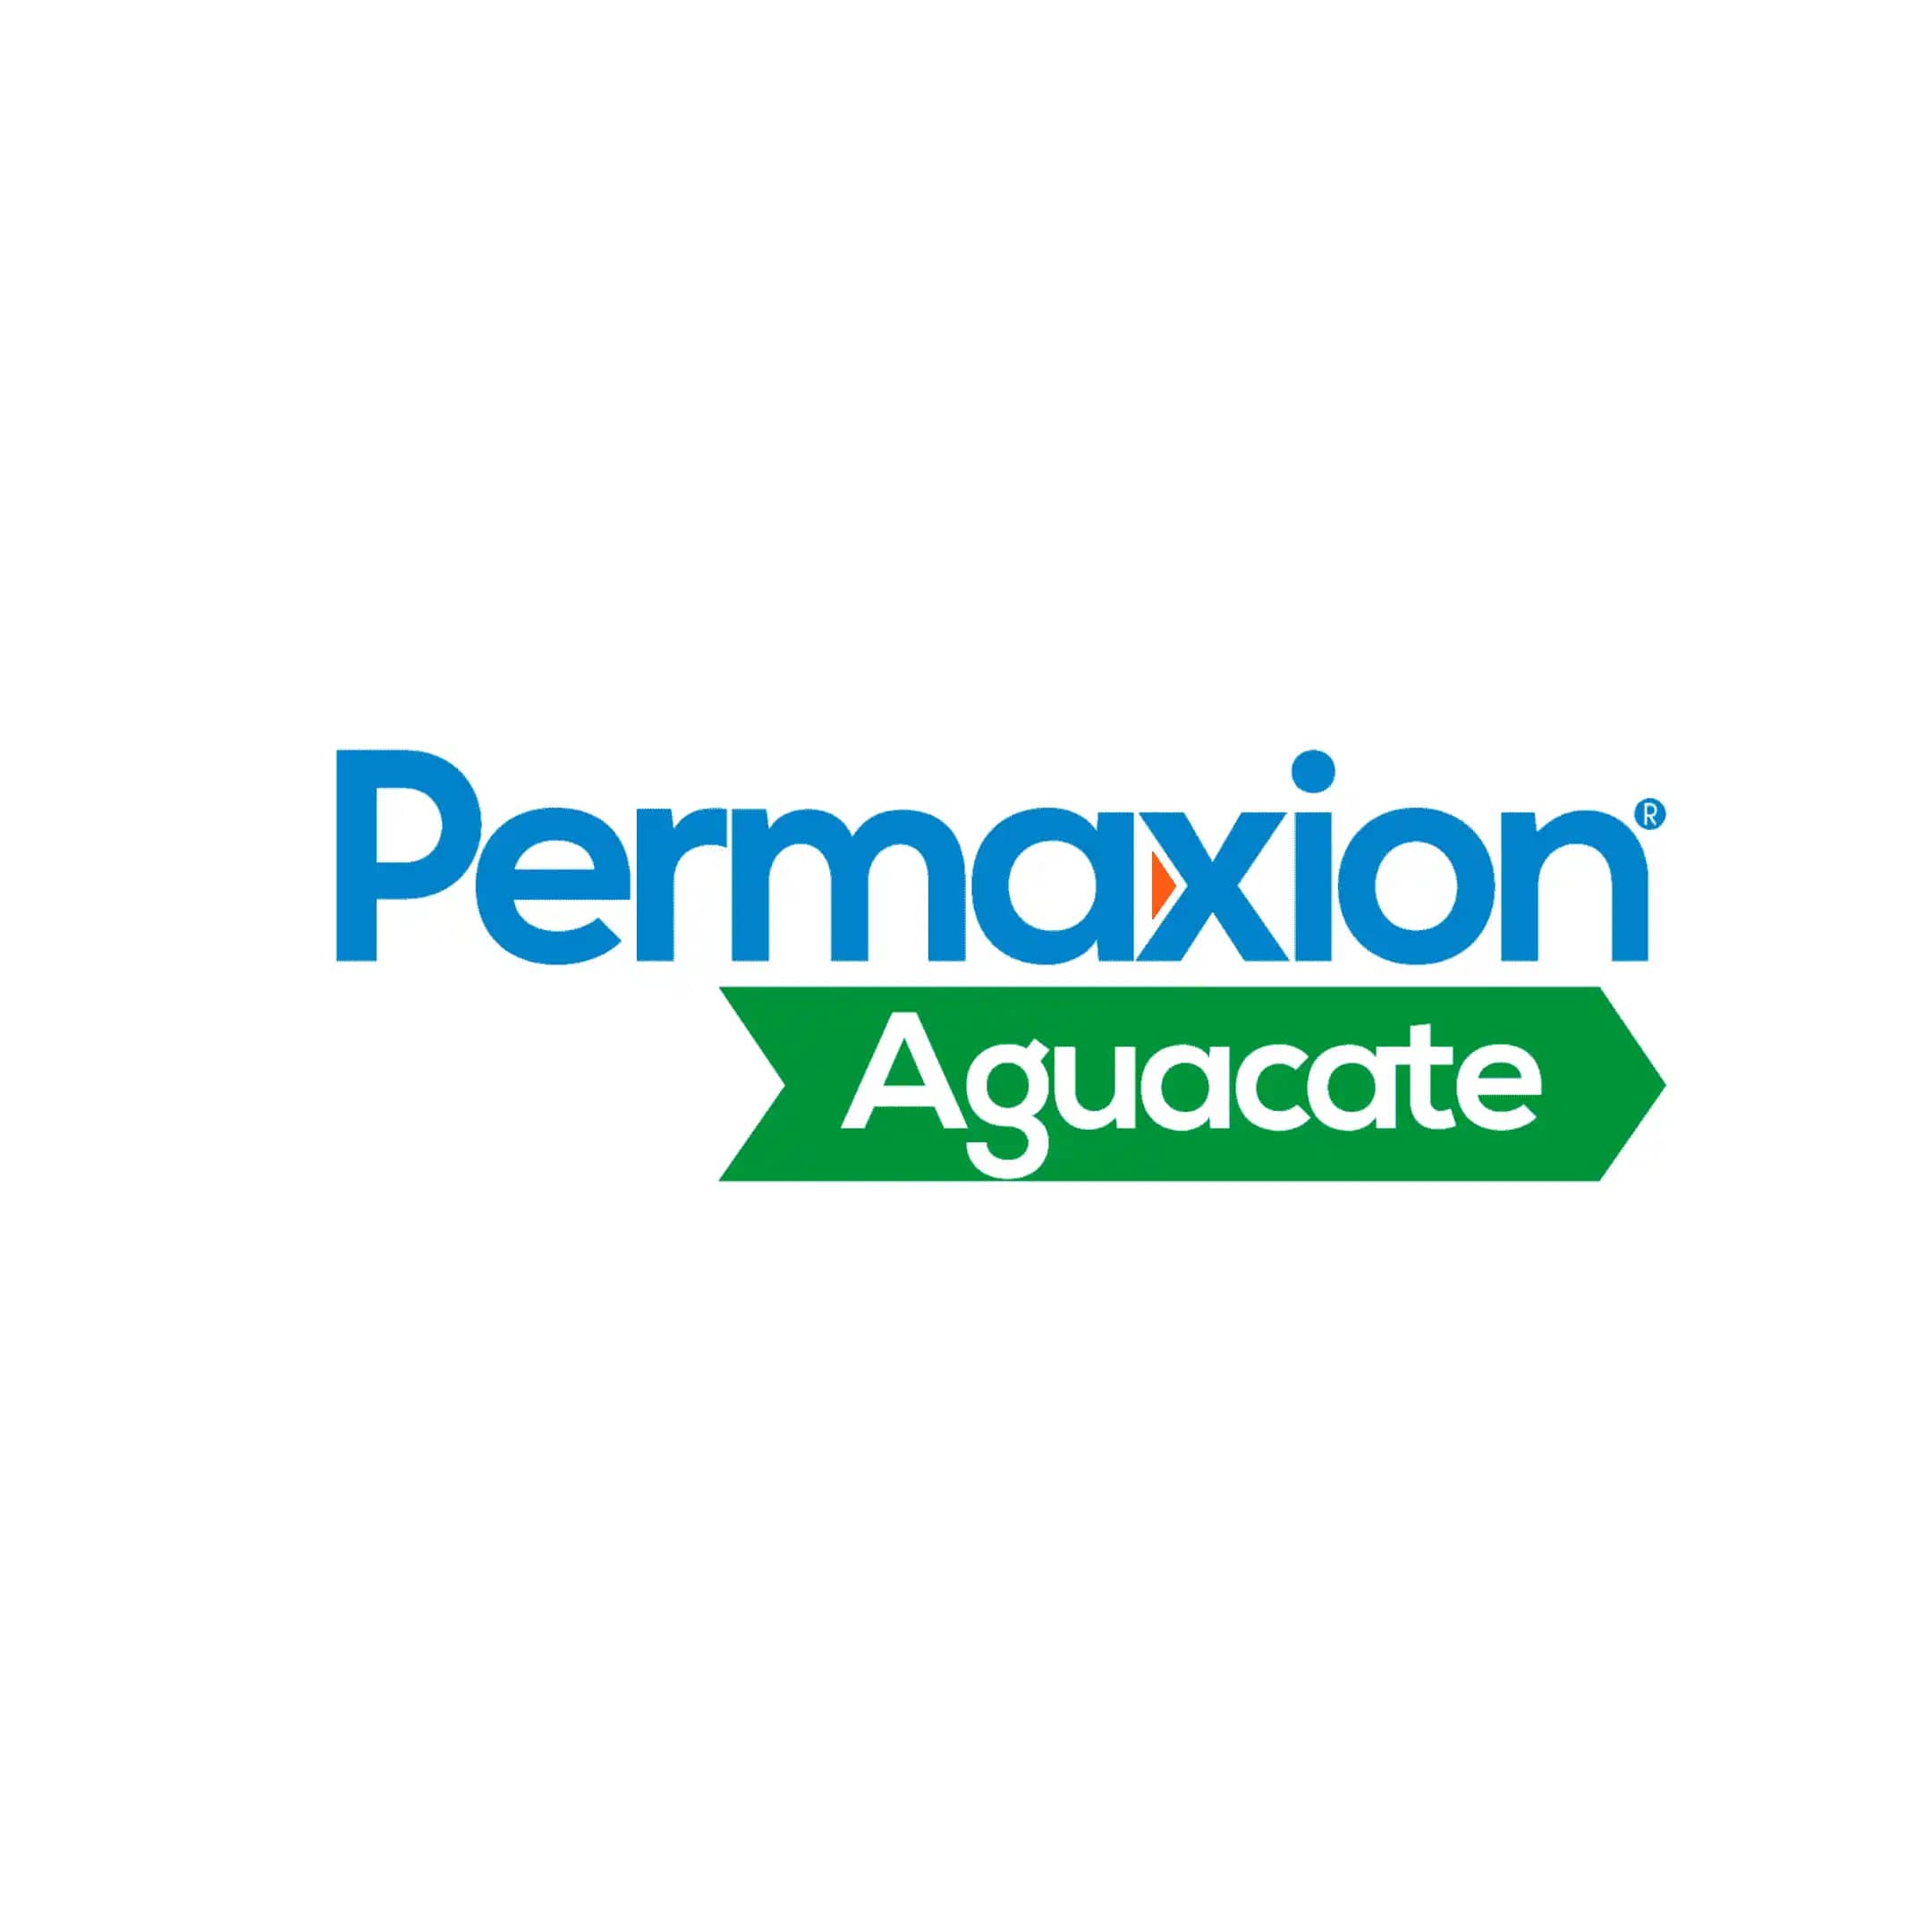 Fertilizante Permaxion Aguacate Producción x 50 kg